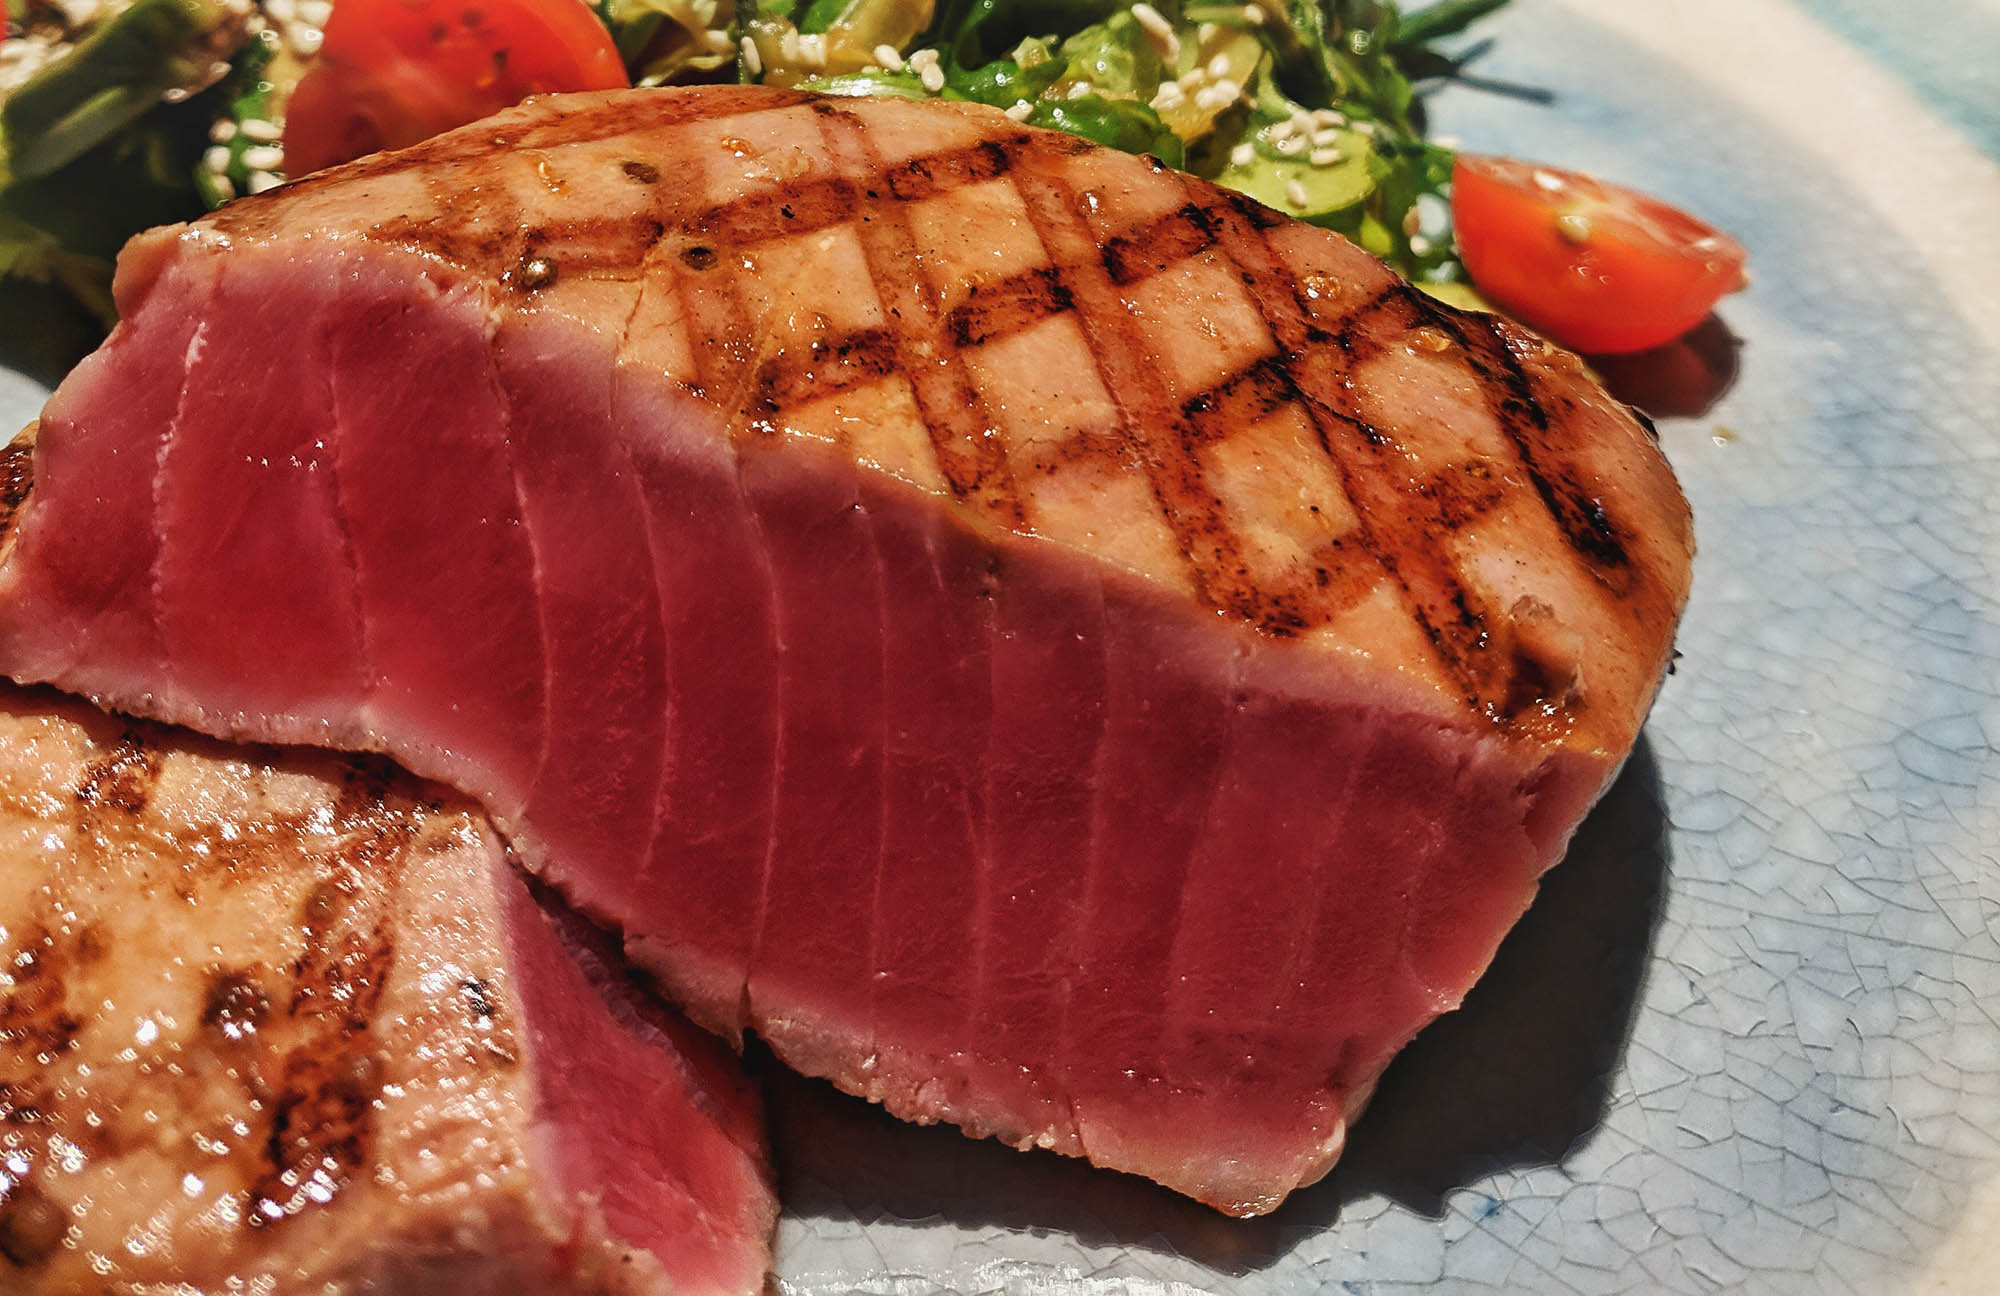 Grill Seared Bluefin Tuna Steak Recipe - A Grilling Masterpiece